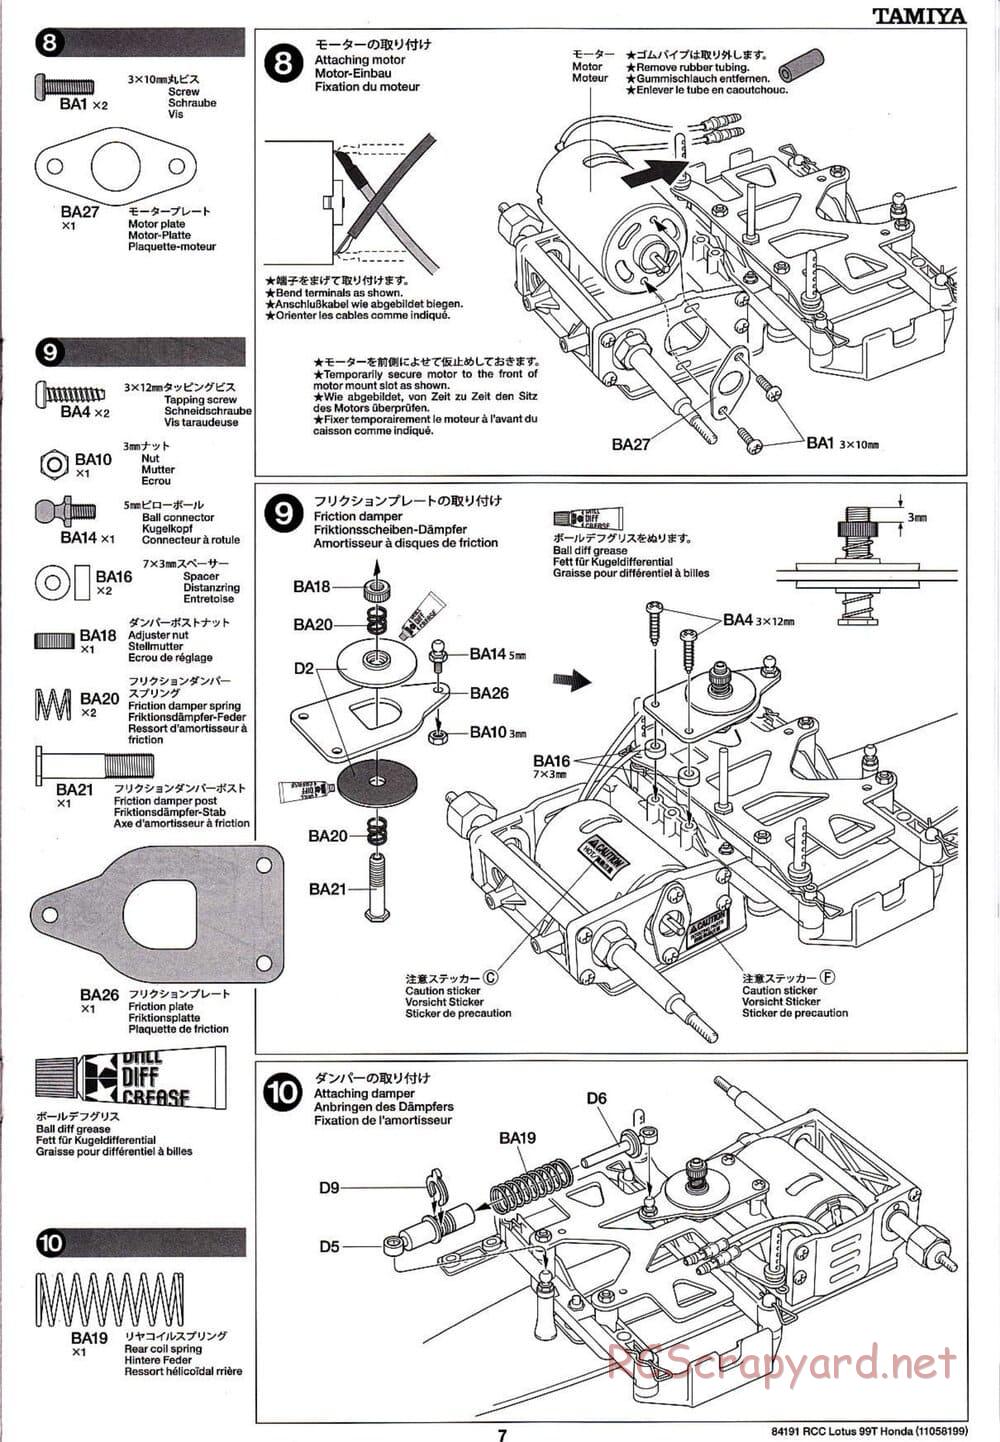 Tamiya - Team Lotus 99T Honda - F103 Chassis - Manual - Page 7